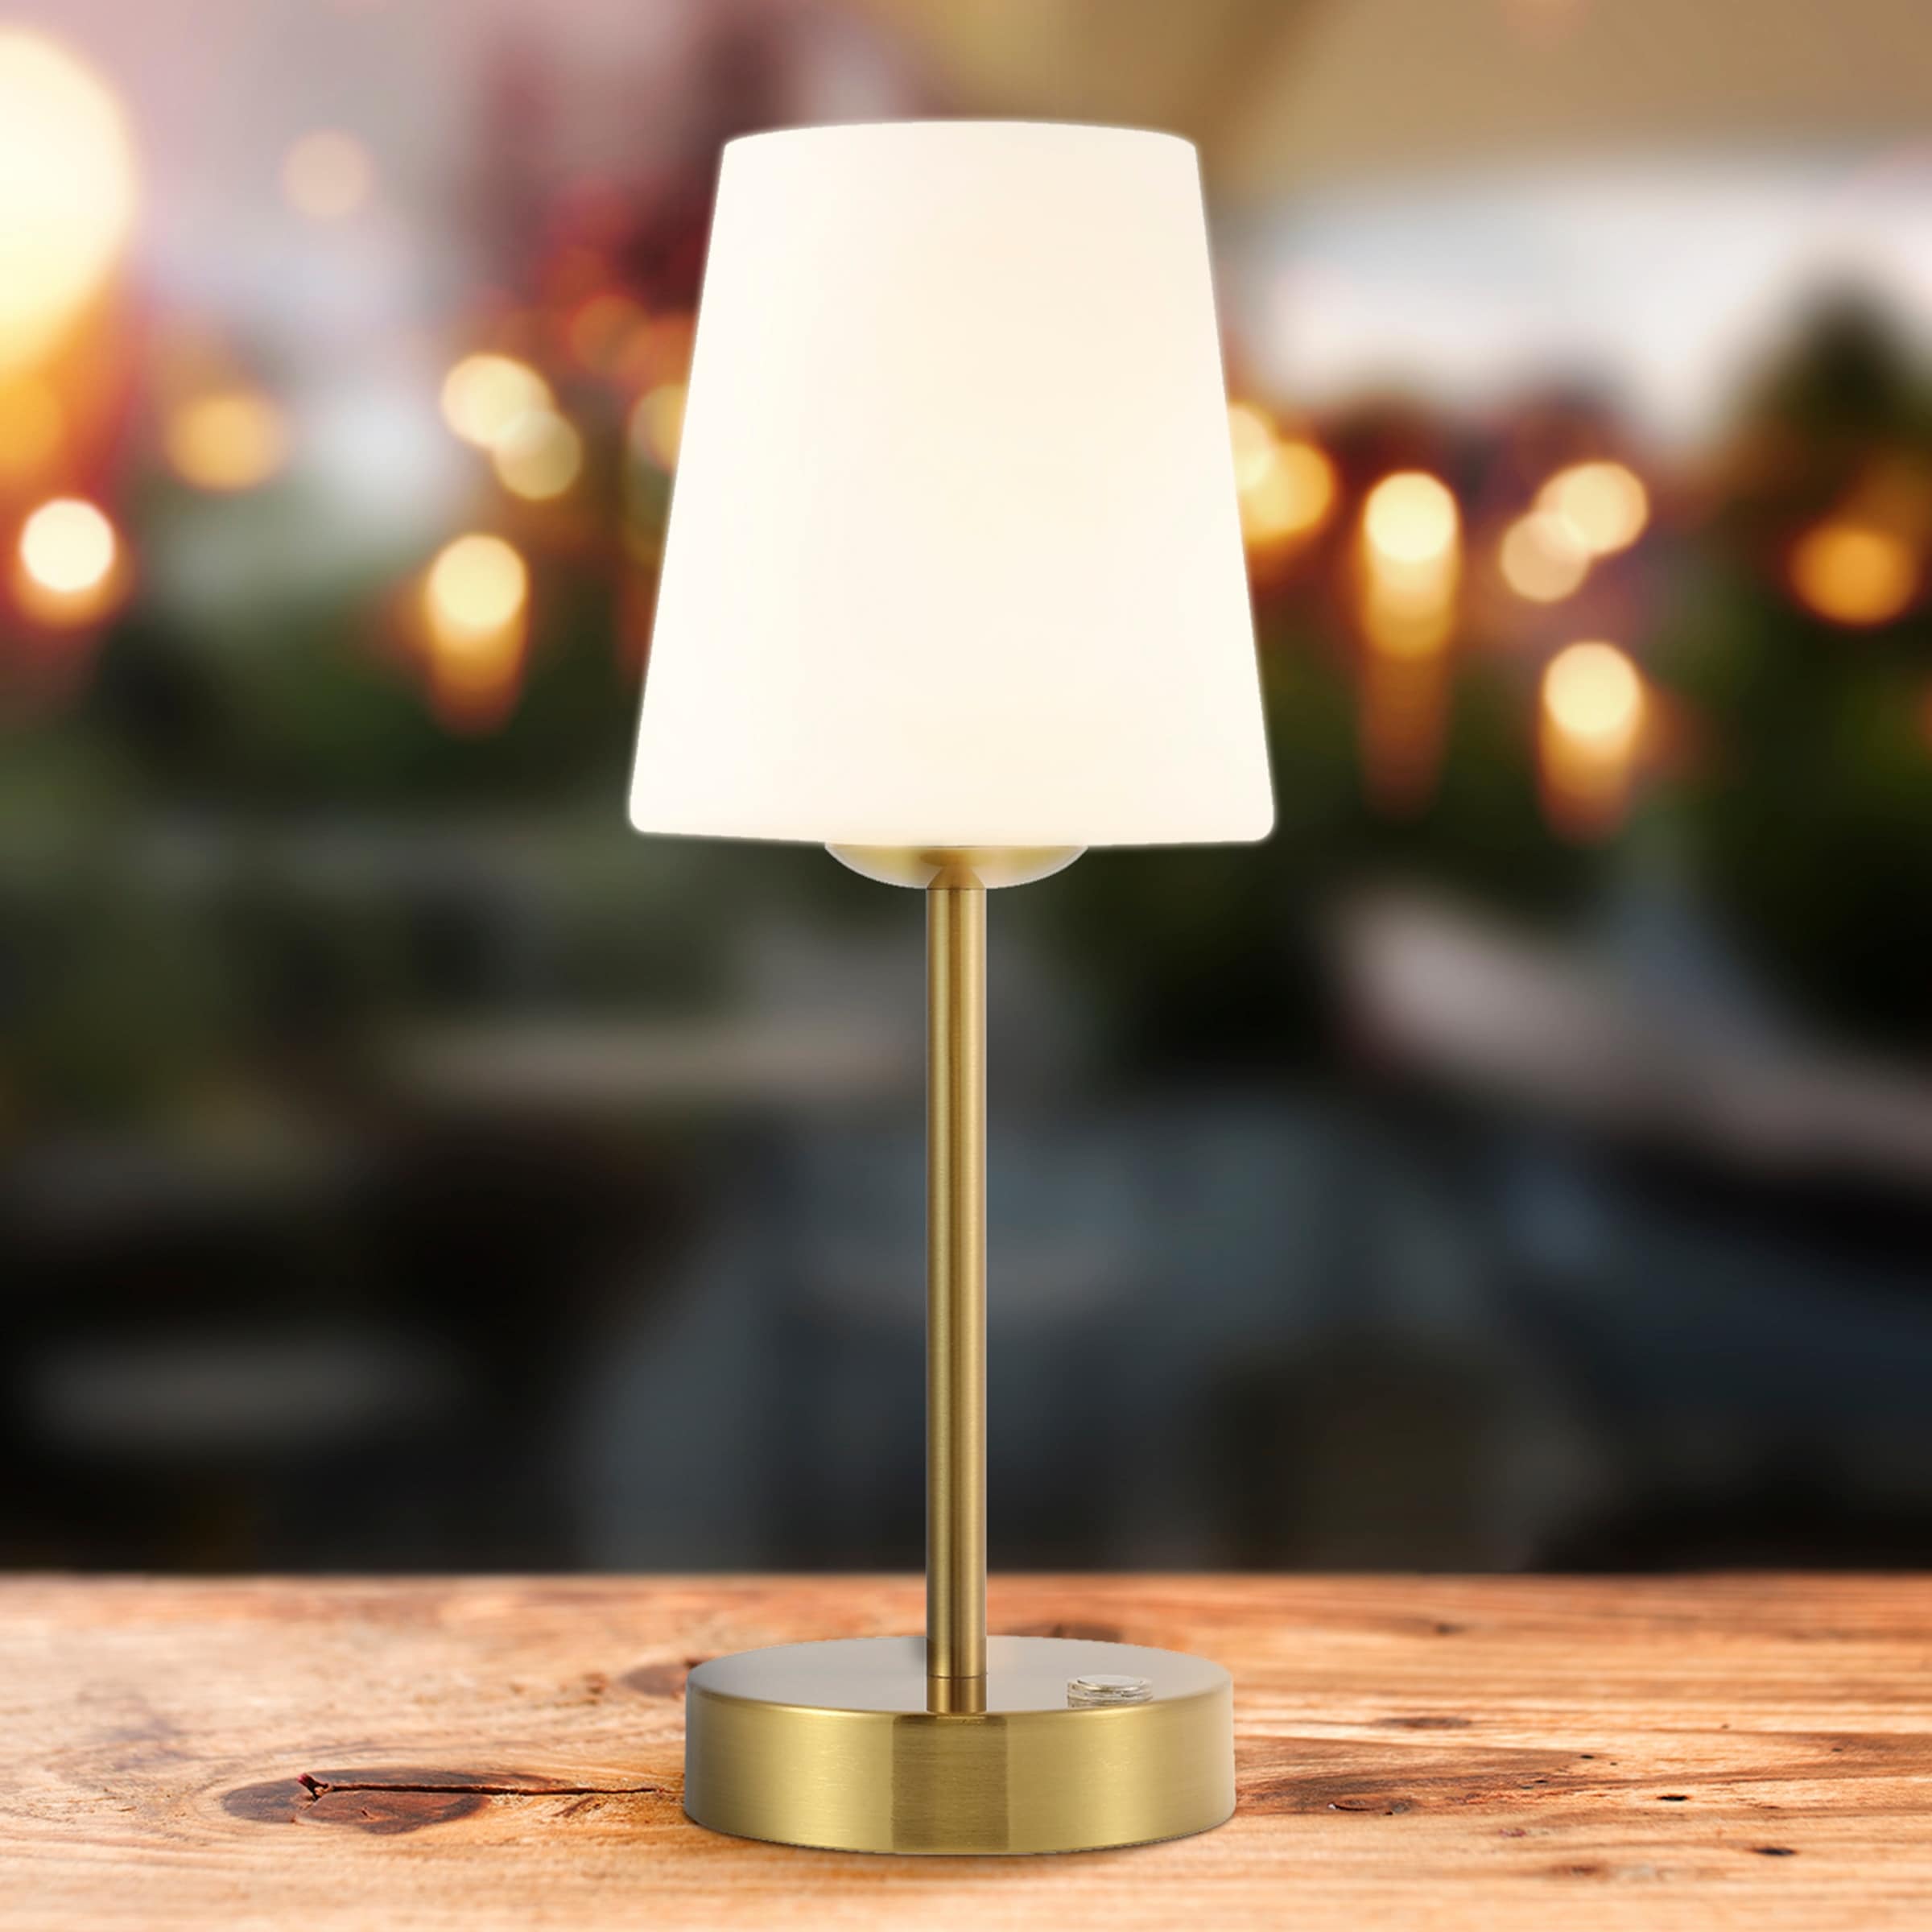 Lampe sans fil rechargeable Ale BE T - Catellani&Smith Valente Design